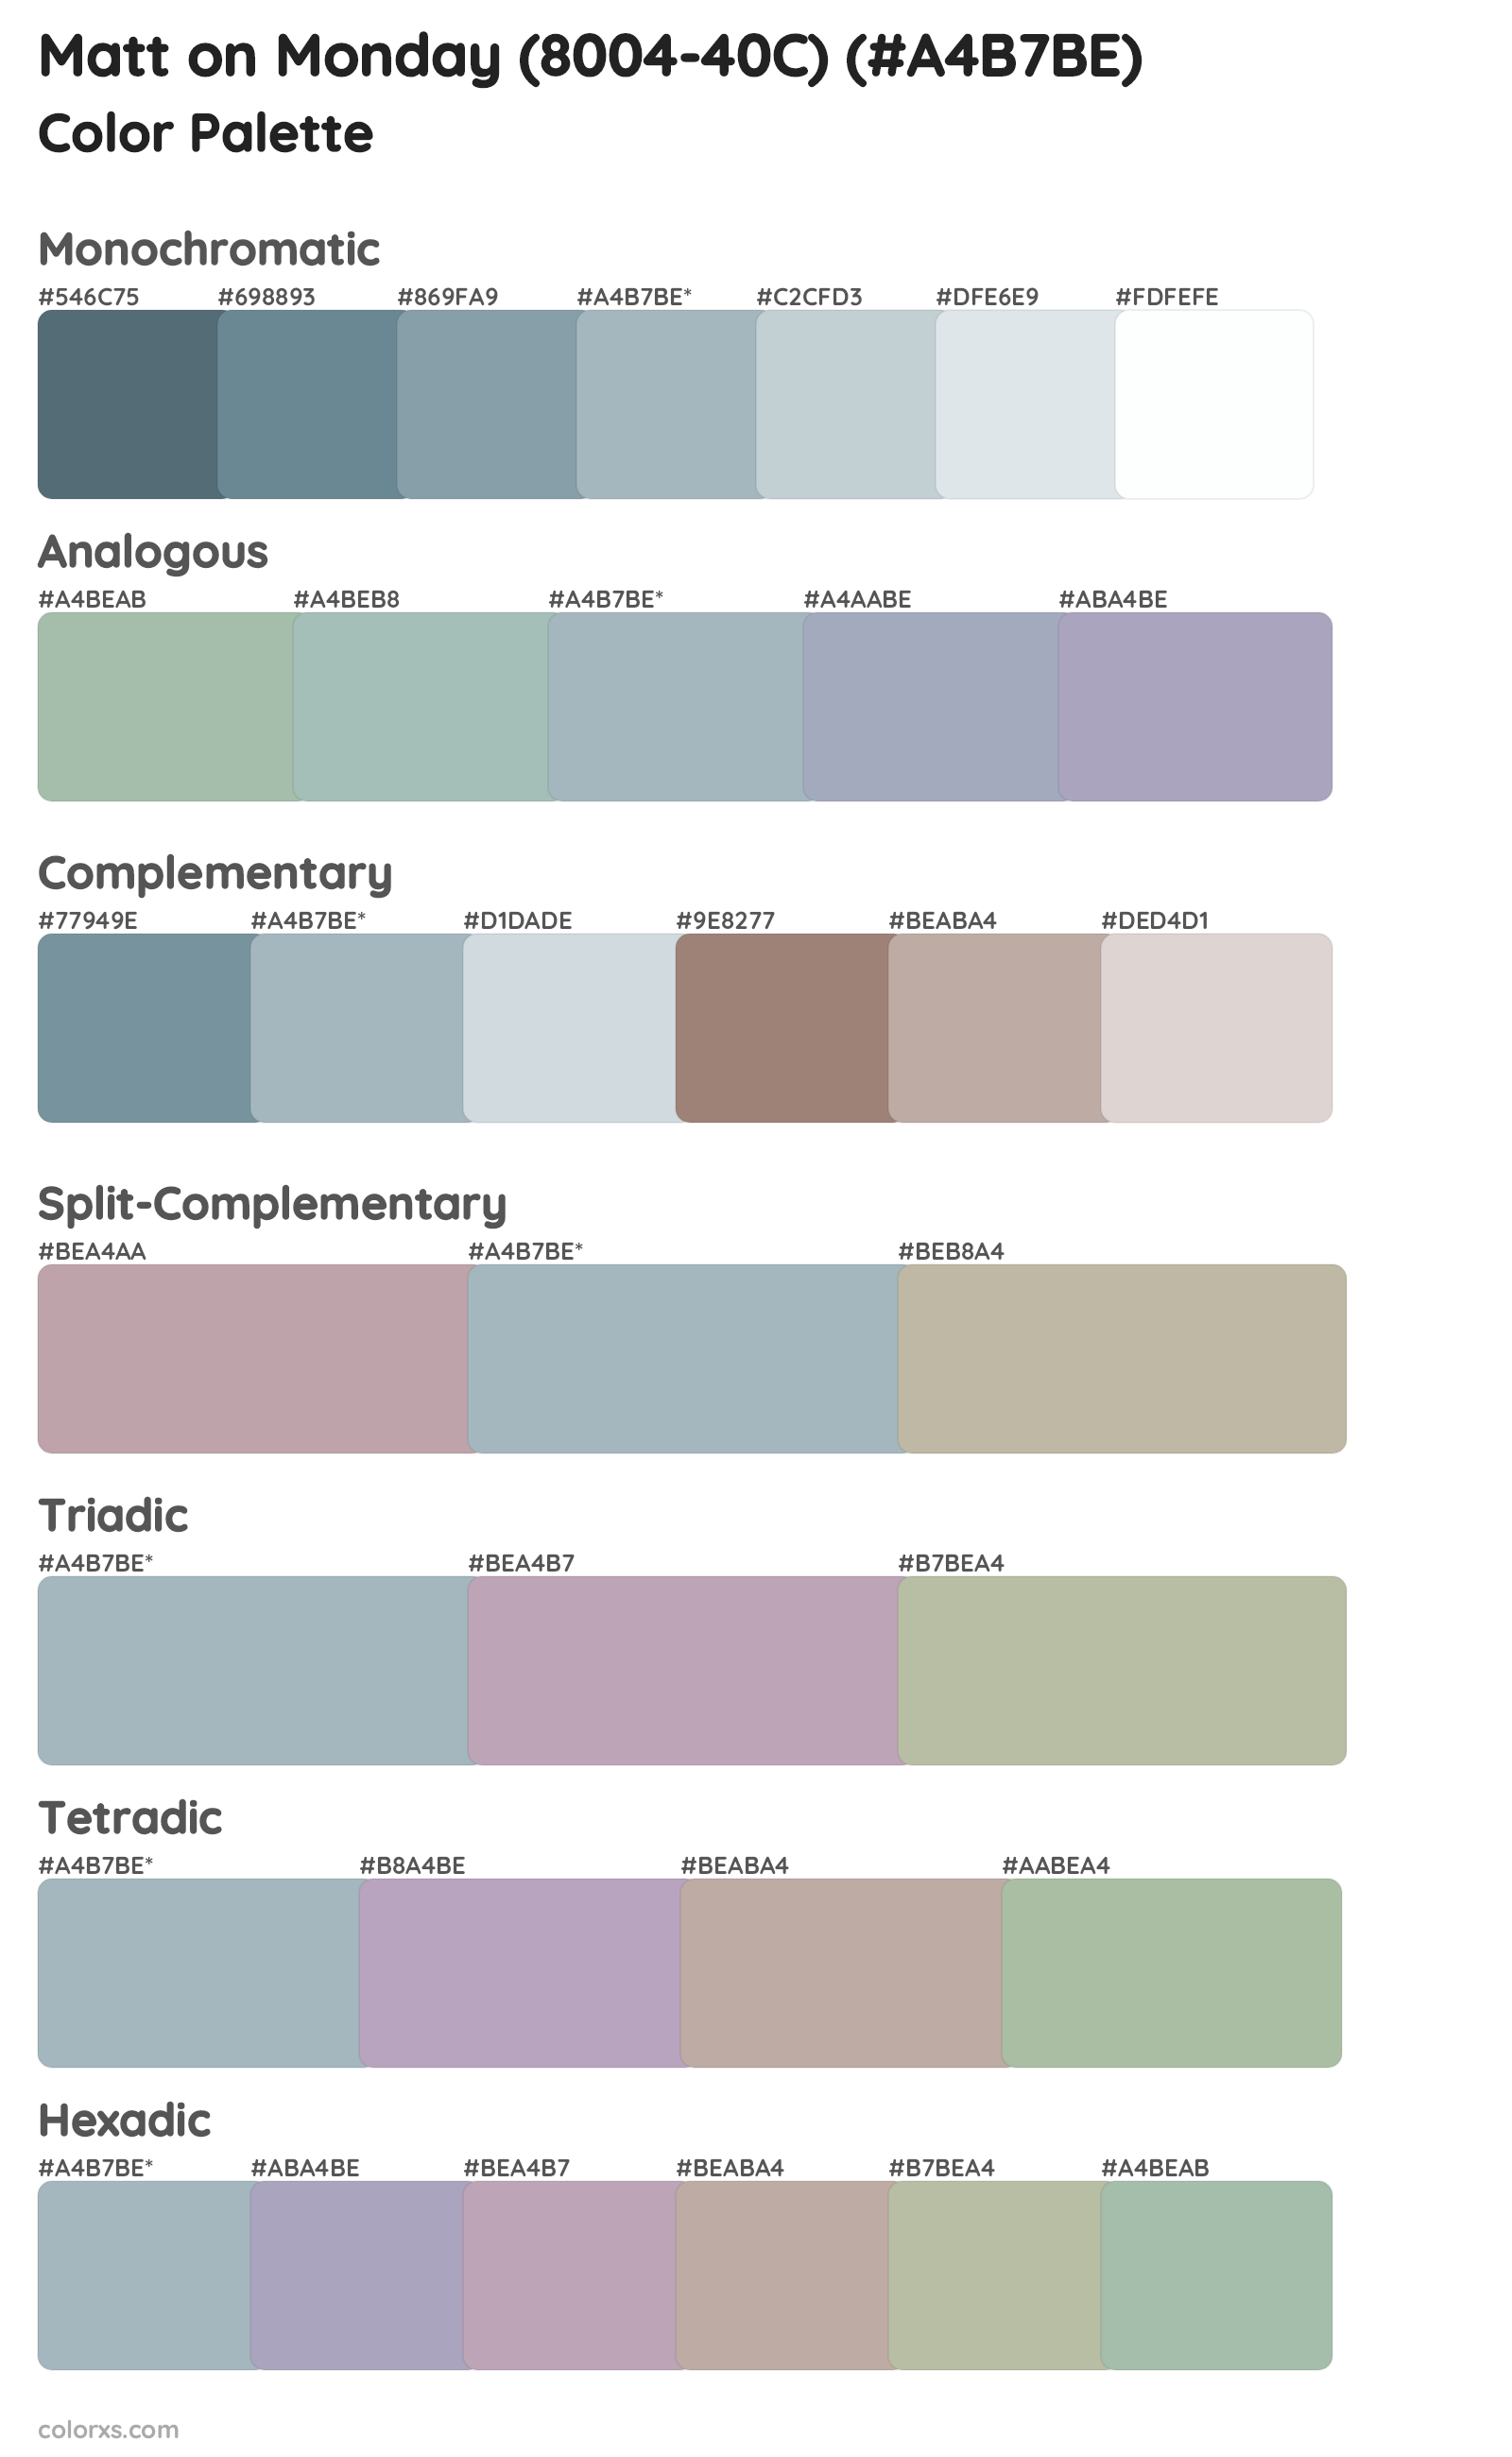 Matt on Monday (8004-40C) Color Scheme Palettes